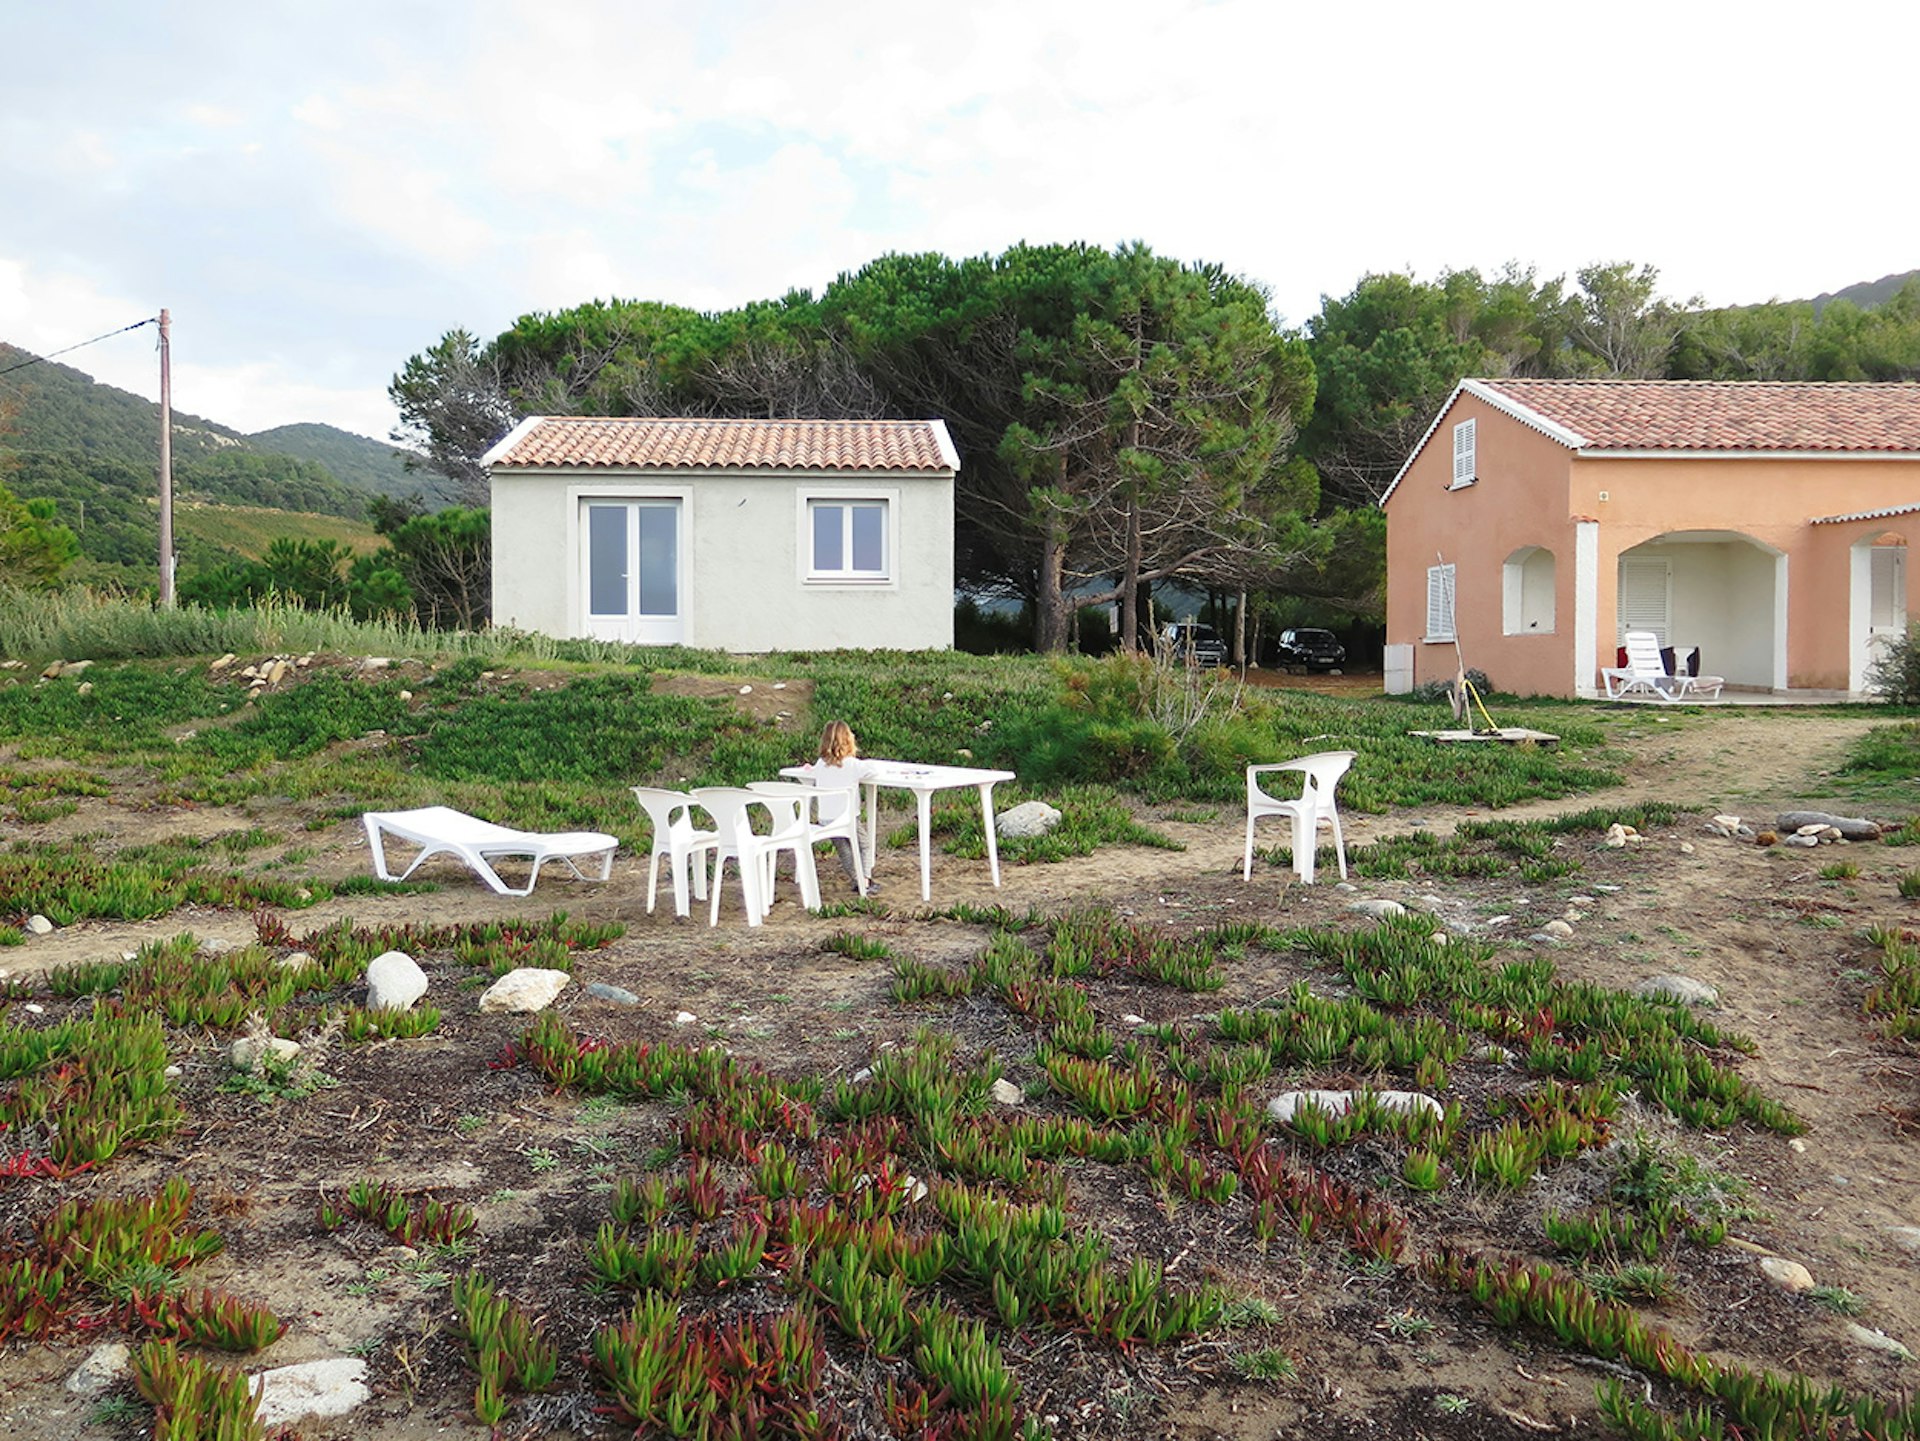 Maisons, Cap Corse, 2015